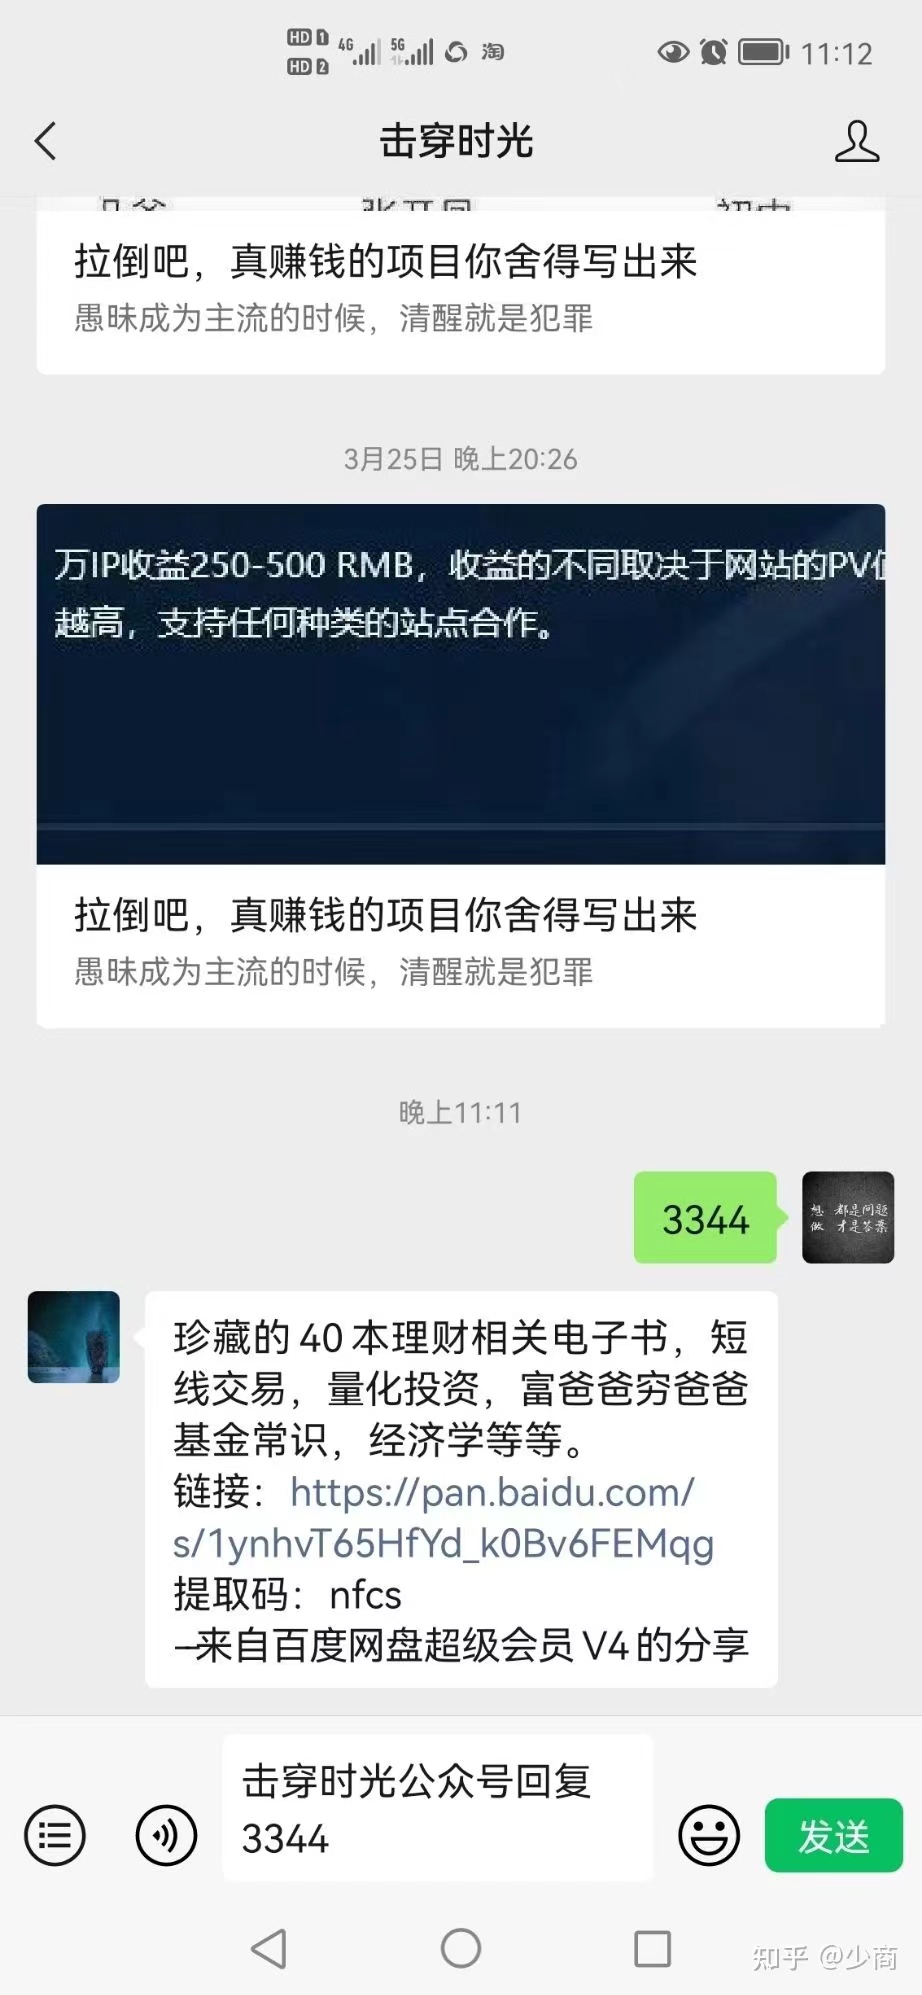 上海工资计算器 上海工资计算公式